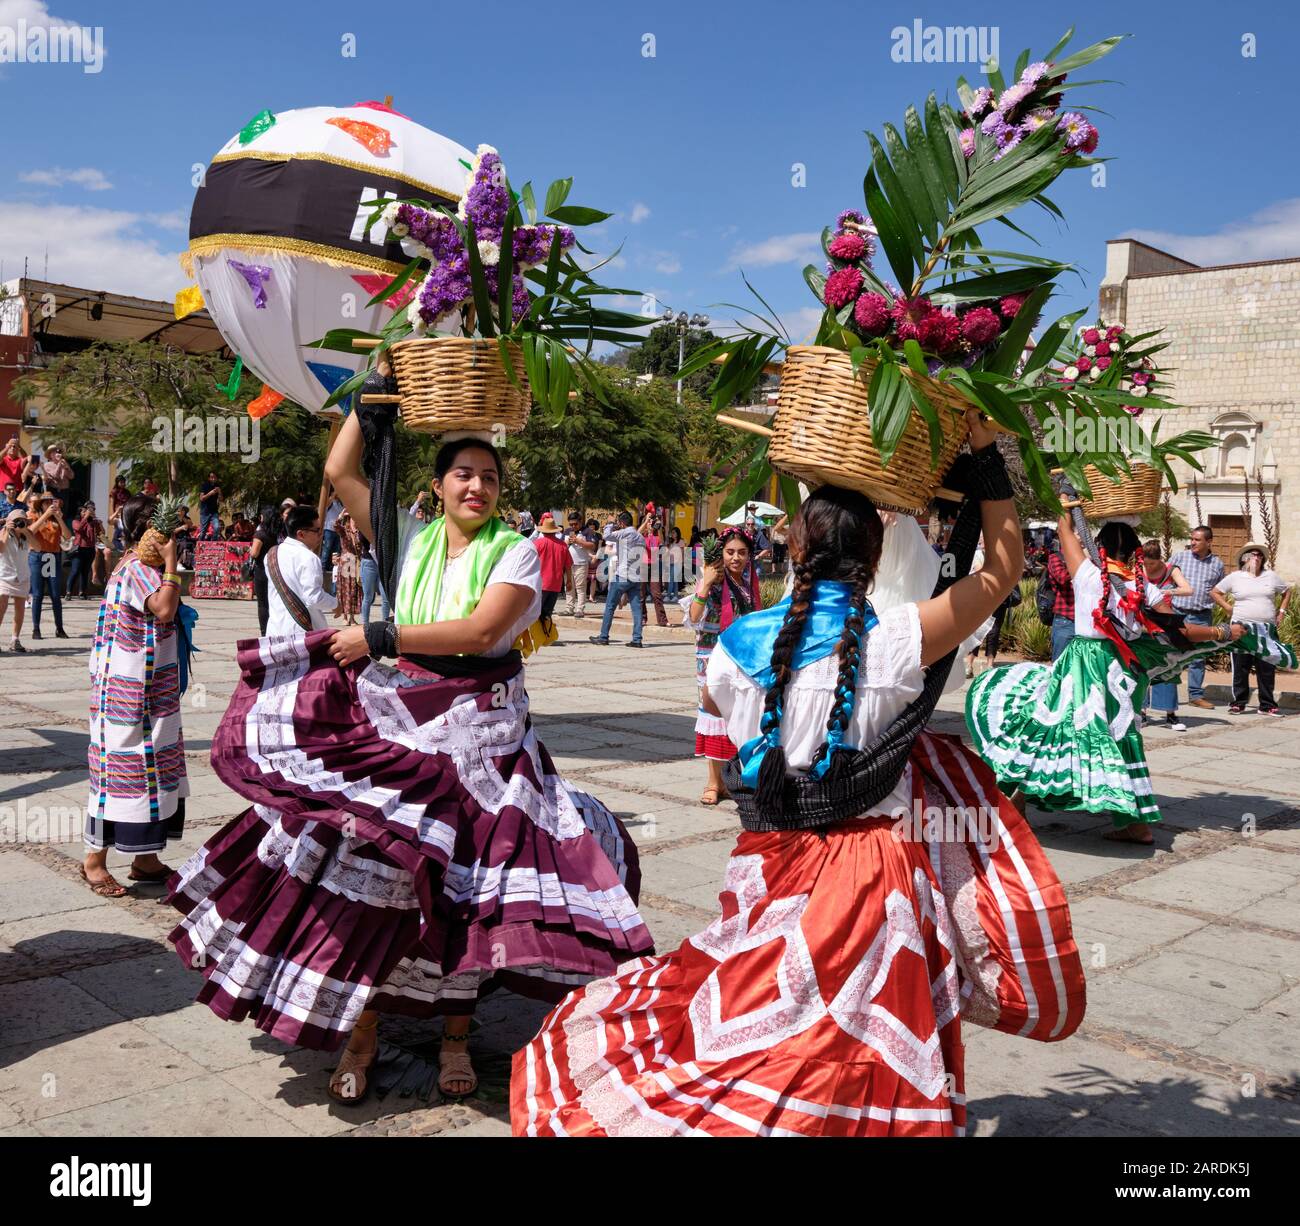 Donna che balla in un abito tradizionale scorrevole con cesto di fiori parte della parata tradizionale (Calenda de Bodas) sulle strade di Oaxaca. Foto Stock